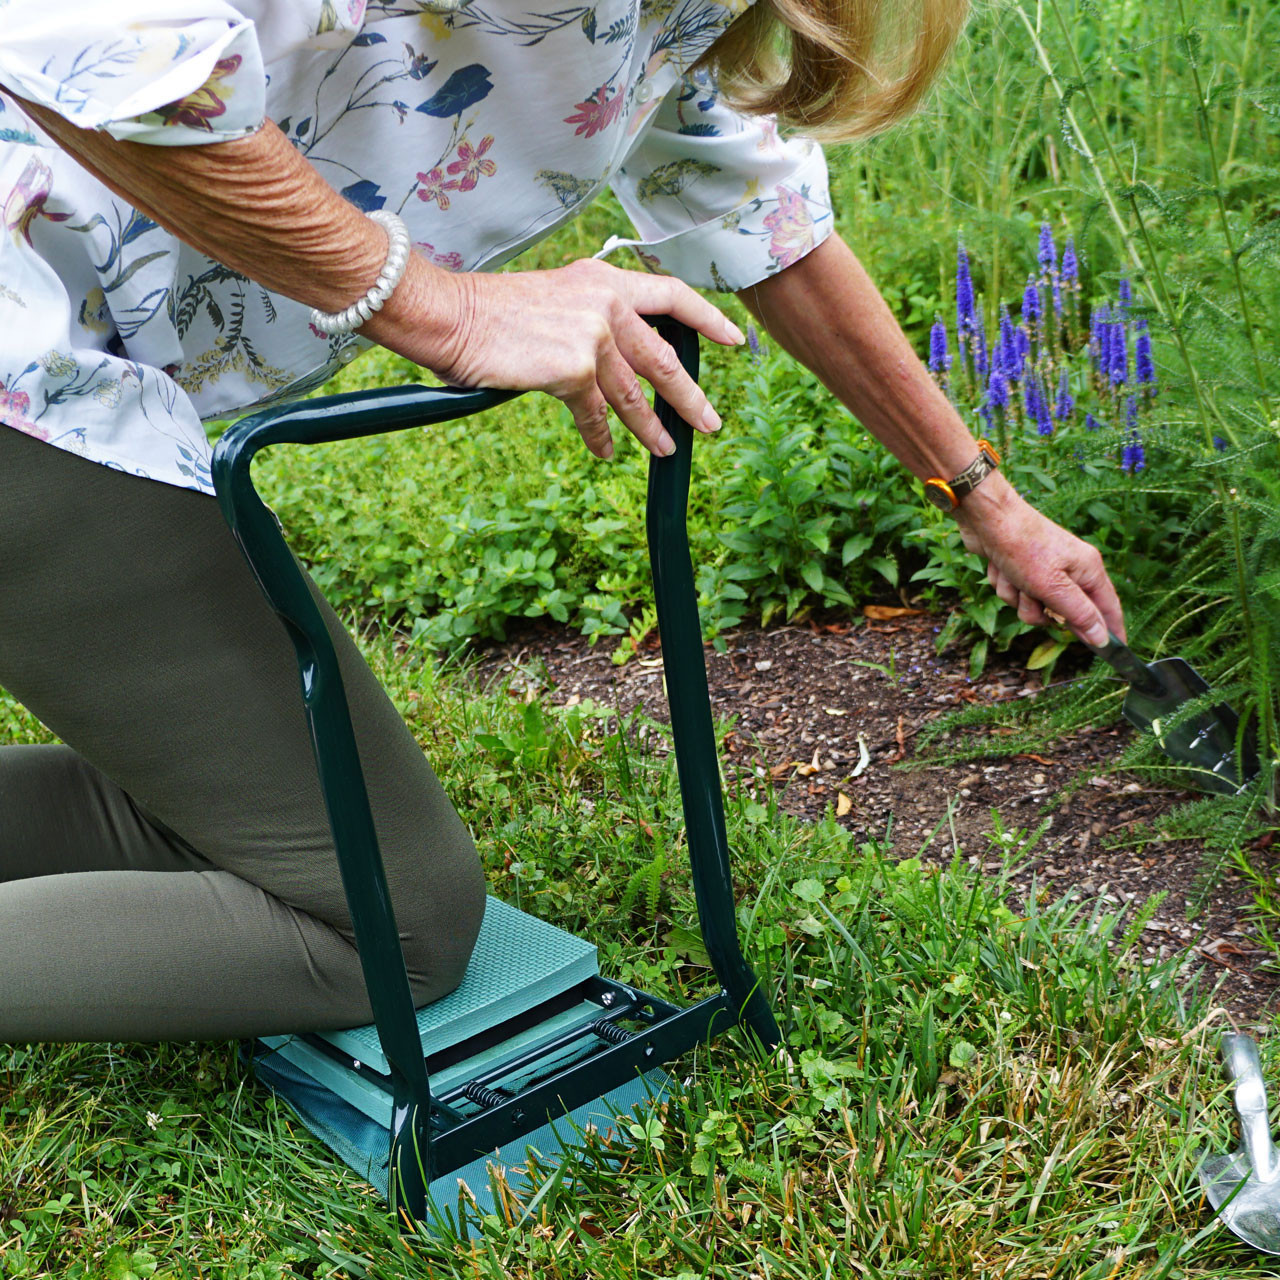 8 Best Gardening Knee Pads - Top Kneelers for Comfort in 2023